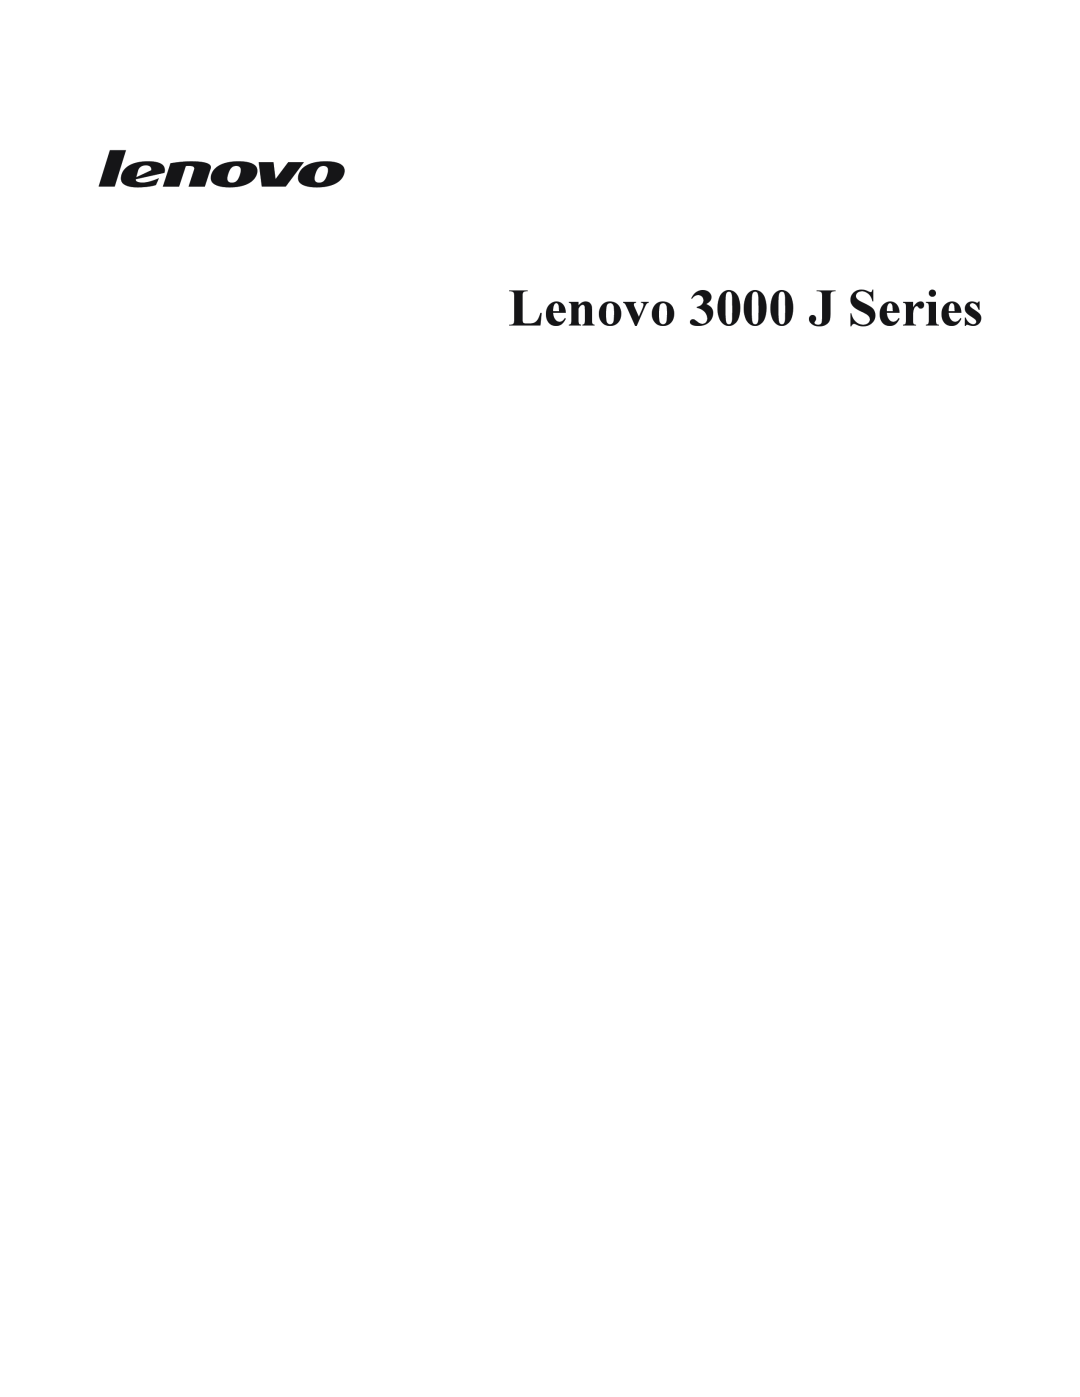 Lenovo 8259, 8258, 8256, 8255, 8254, 8257, 8253, 8252 manual Lenovo 3000 J Series 